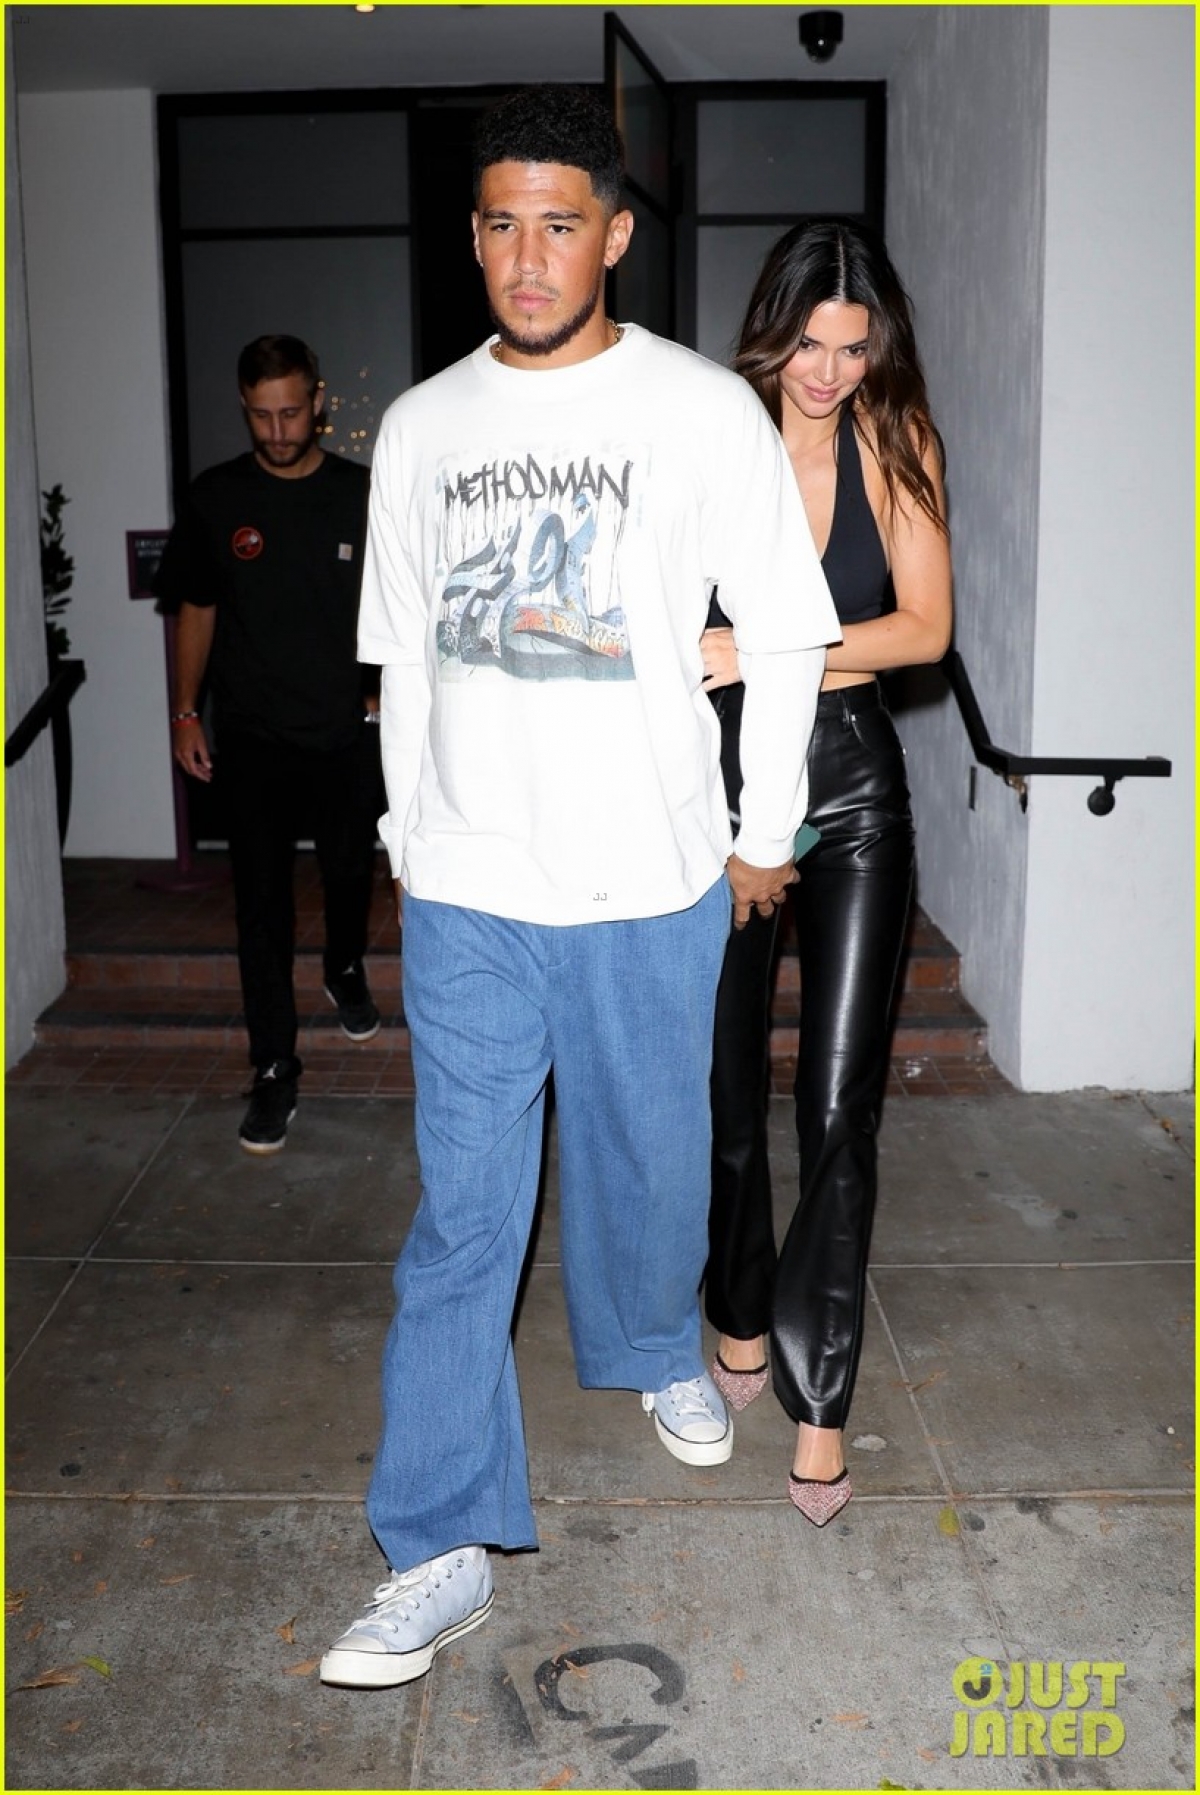 Kendall Jenner xinh đẹp đi chơi đêm cùng bạn trai sau khi tái hợp - Ảnh 3.